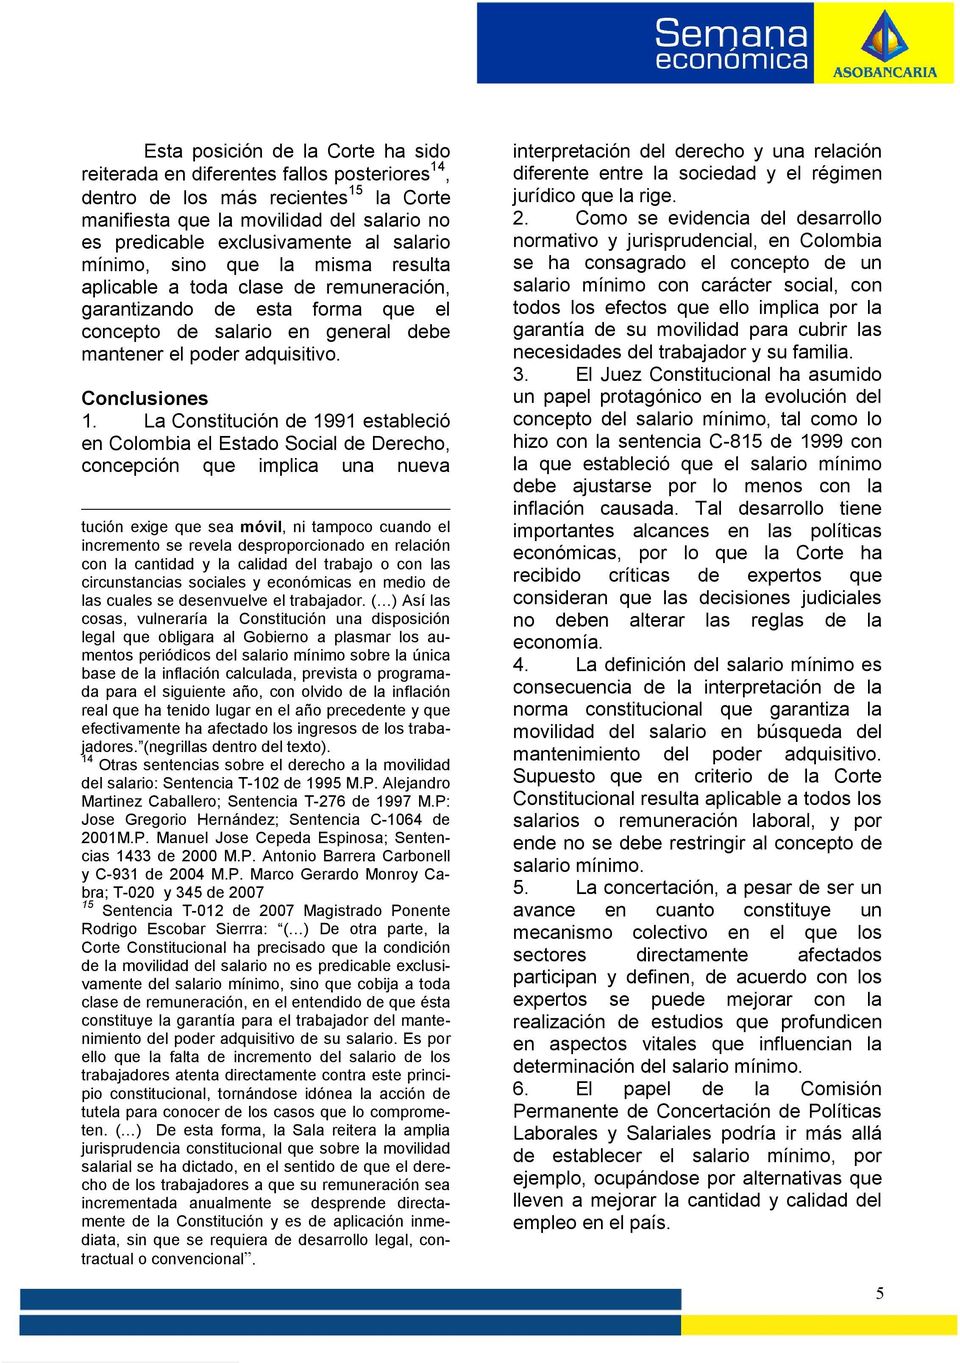 La Constitución de 1991 estableció en Colombia el Estado Social de Derecho, concepción que implica una nueva tución exige que sea móvil, ni tampoco cuando el incremento se revela desproporcionado en